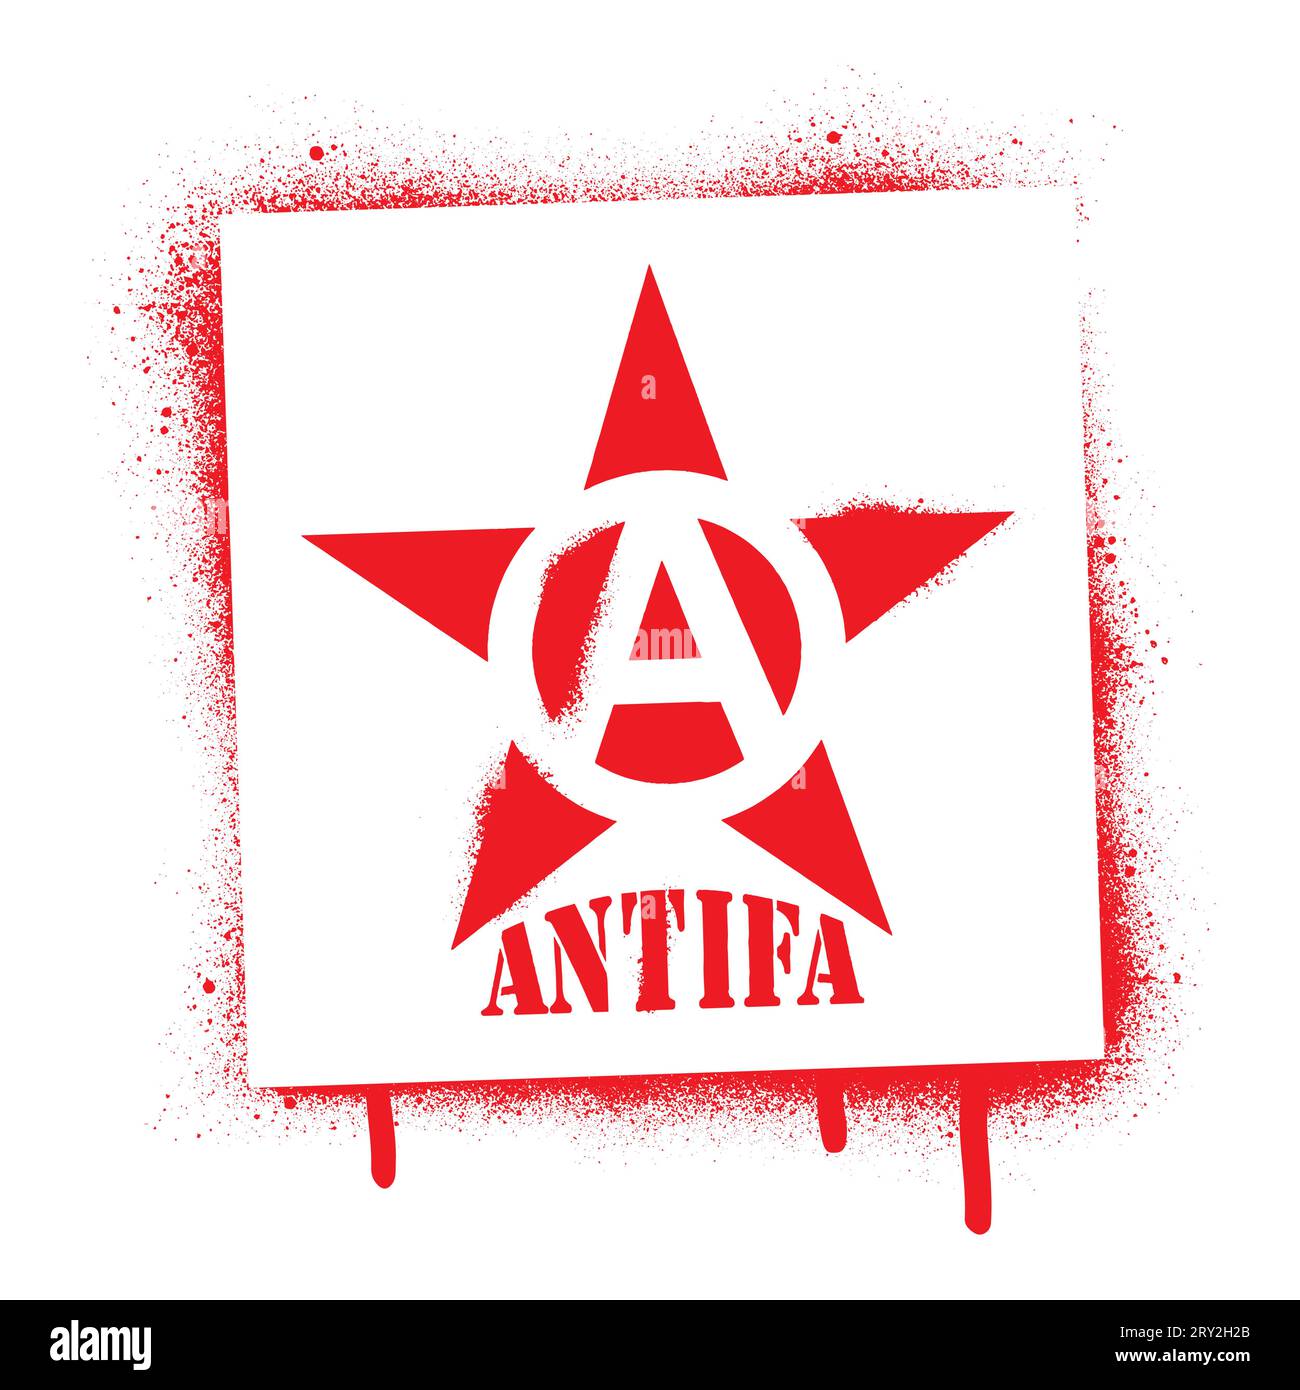 Pochoir graffiti peinture rouge étoile en spray et citation ANTIFA. Nom commun pour les militants et radicaux antifascistes, communistes, gauchistes et anarchistes. Illustration de Vecteur